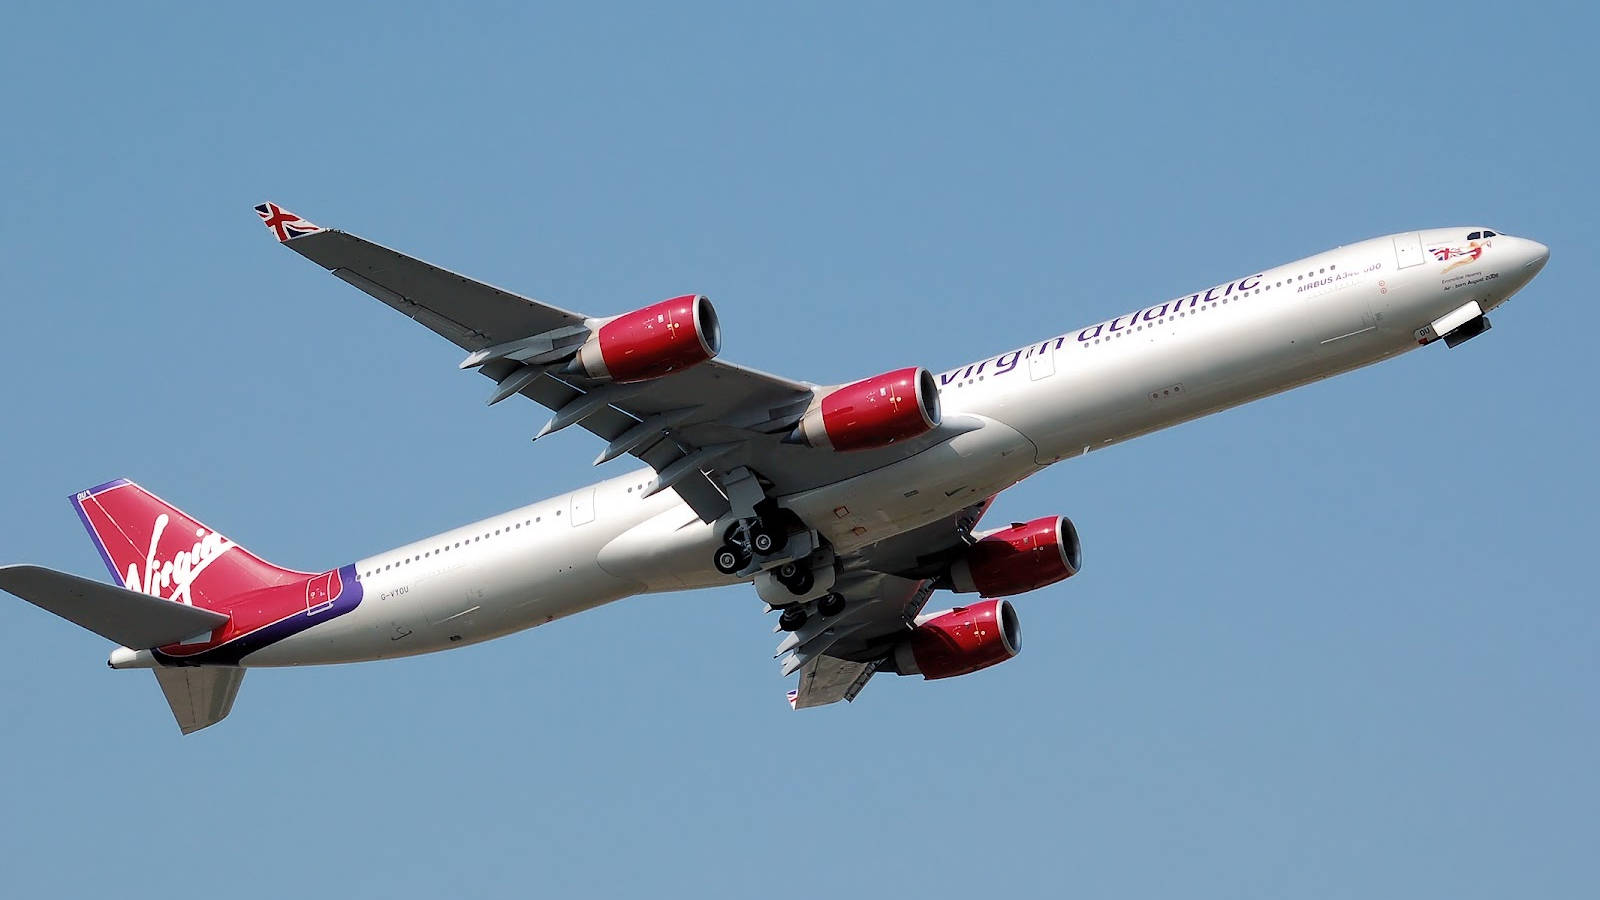 Soaring Plane of Virgin Atlantic Aviation Wallpaper